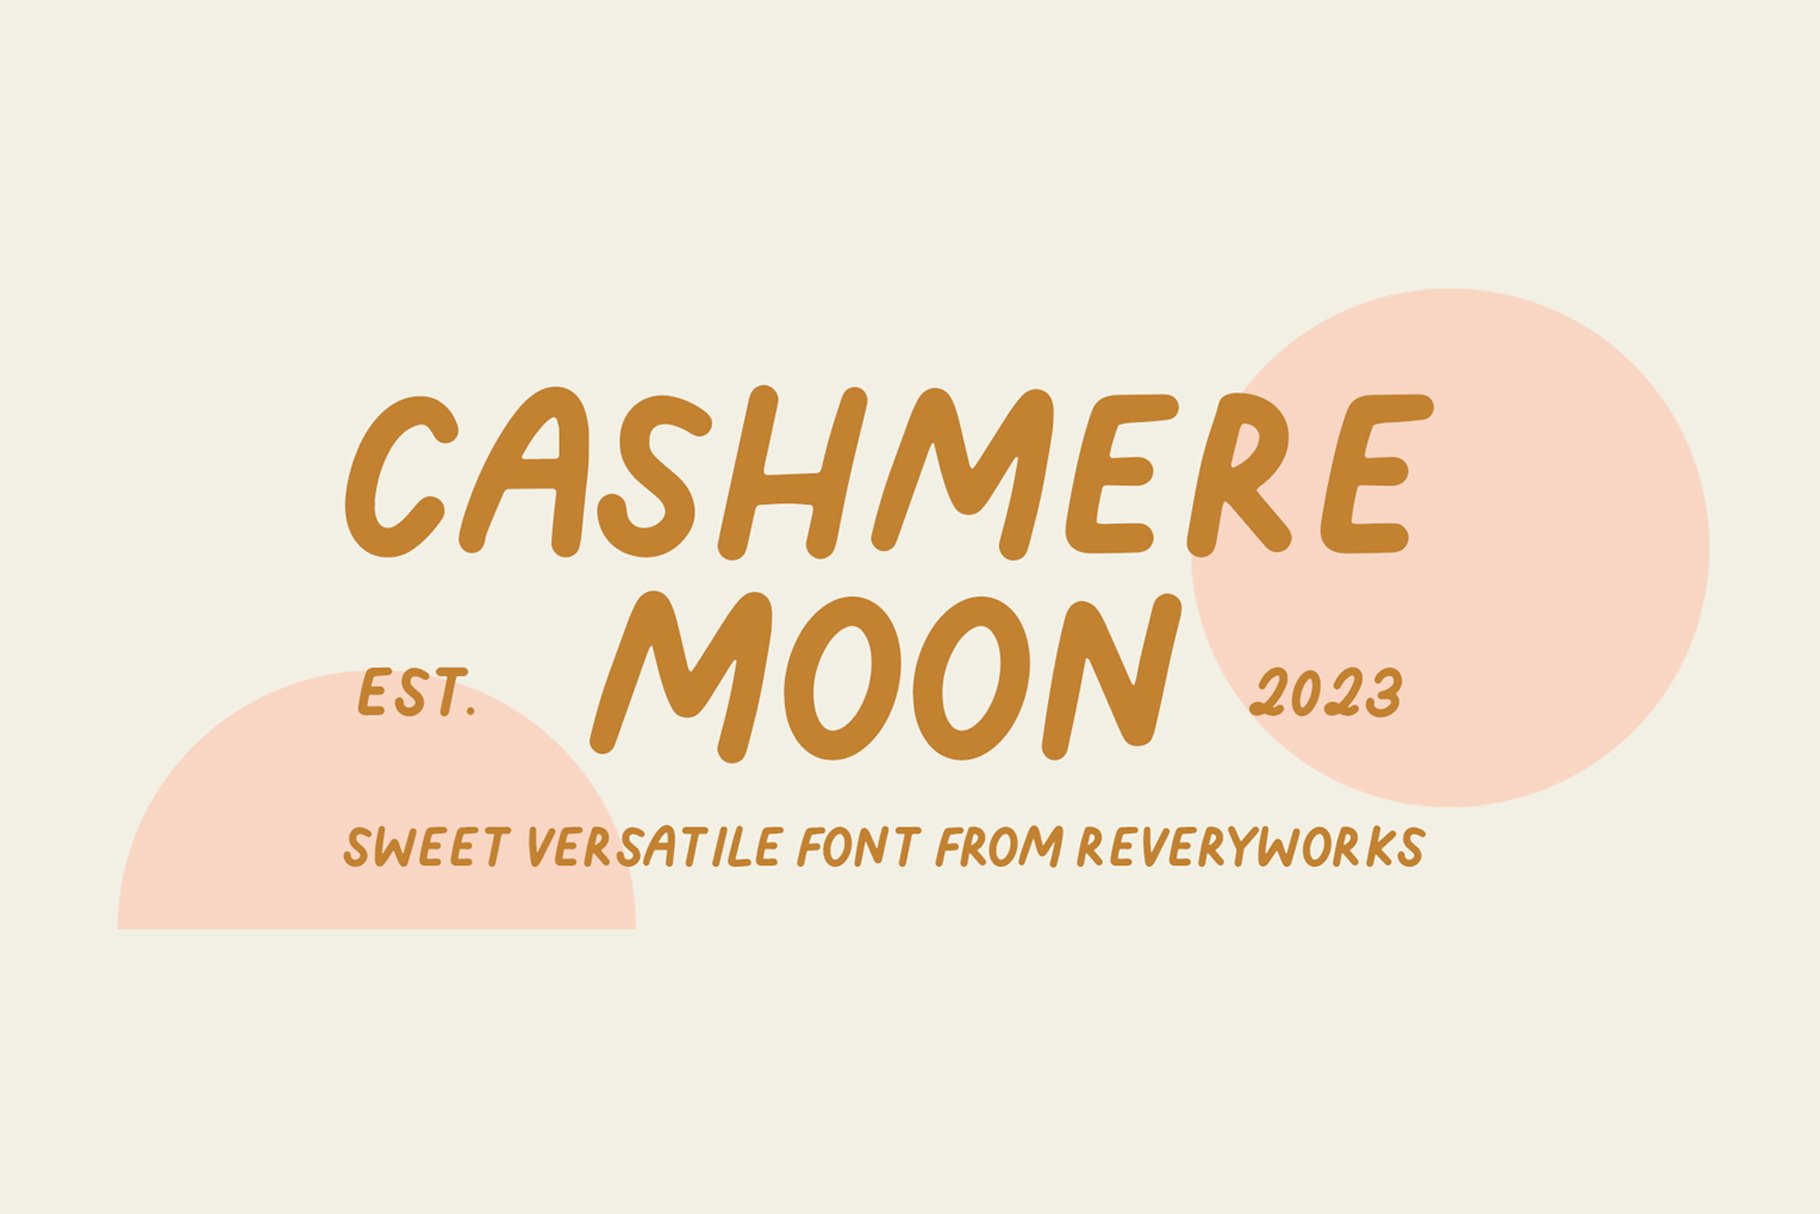 Cashmere Moon Sans (3 fonts) cover image.